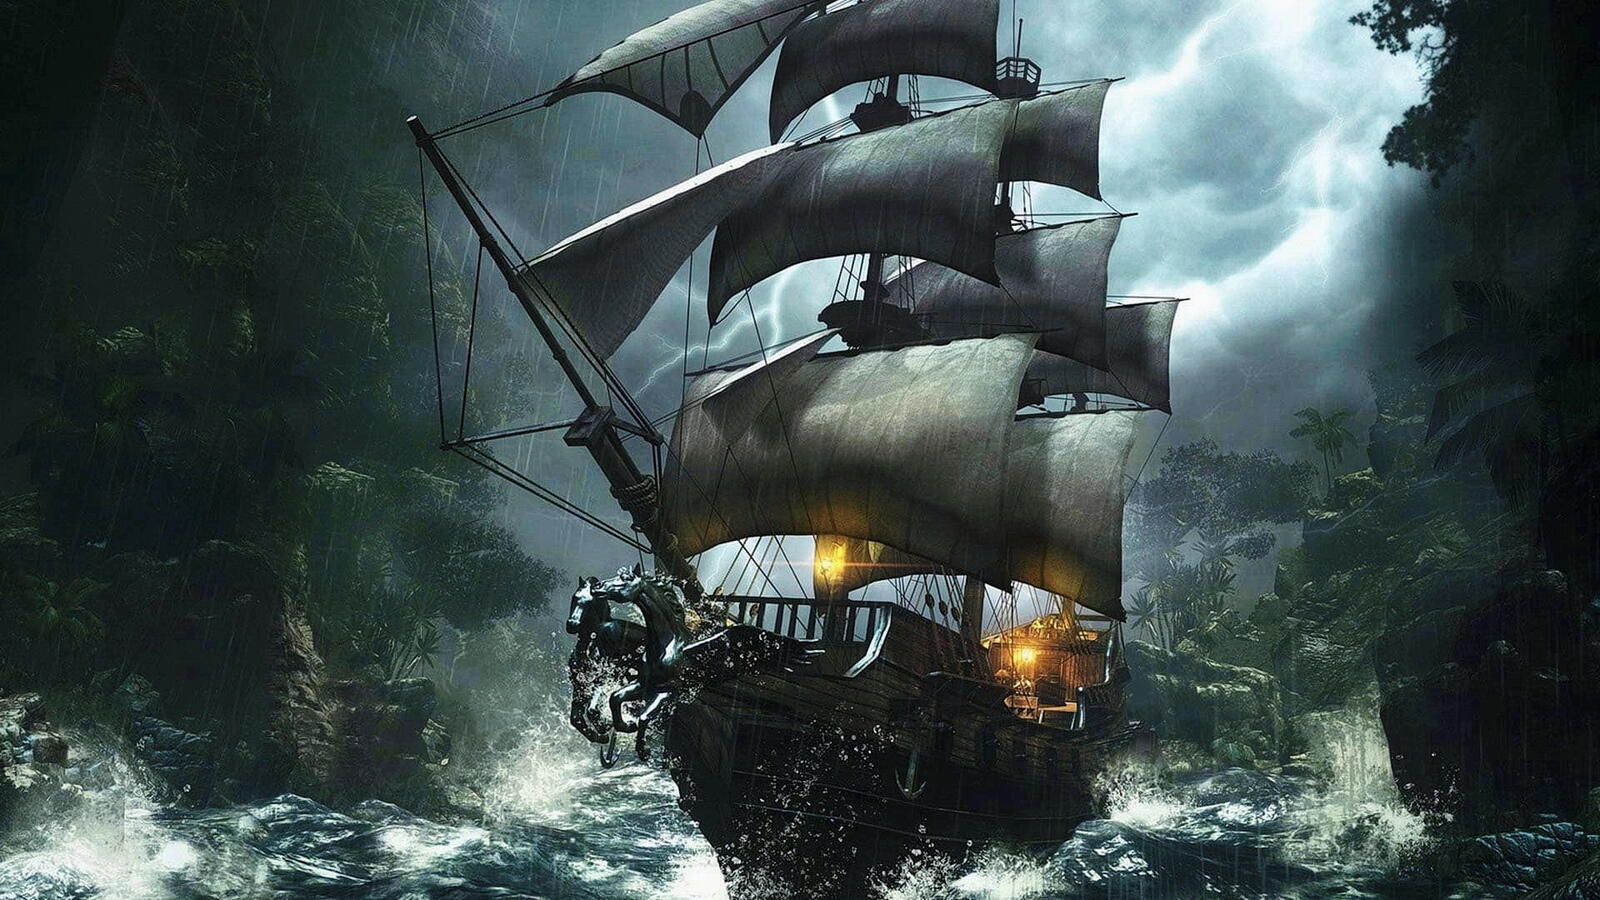 Бесплатное фото Парусный корабль проходящий между скал в шторм